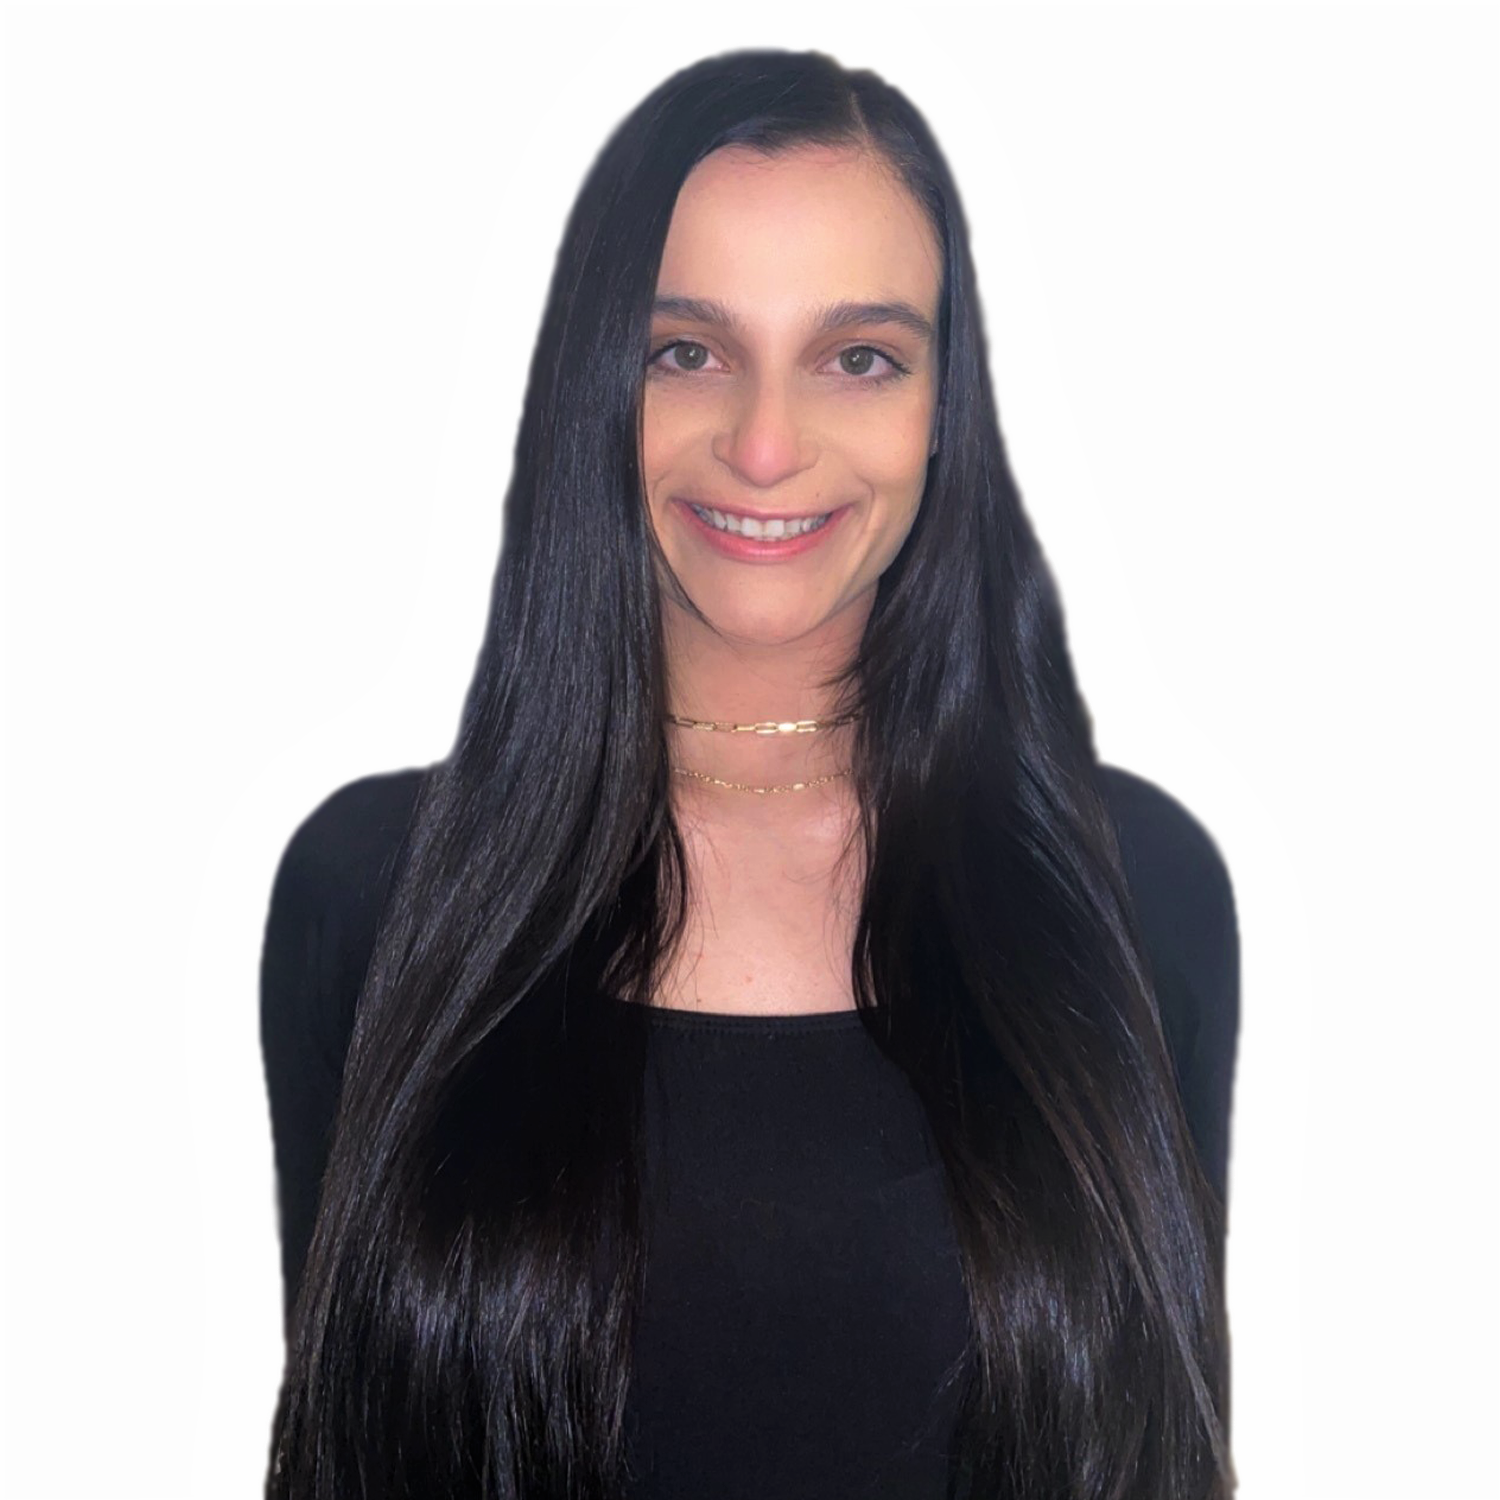 Haley Enriquez - Assistant Account Executive